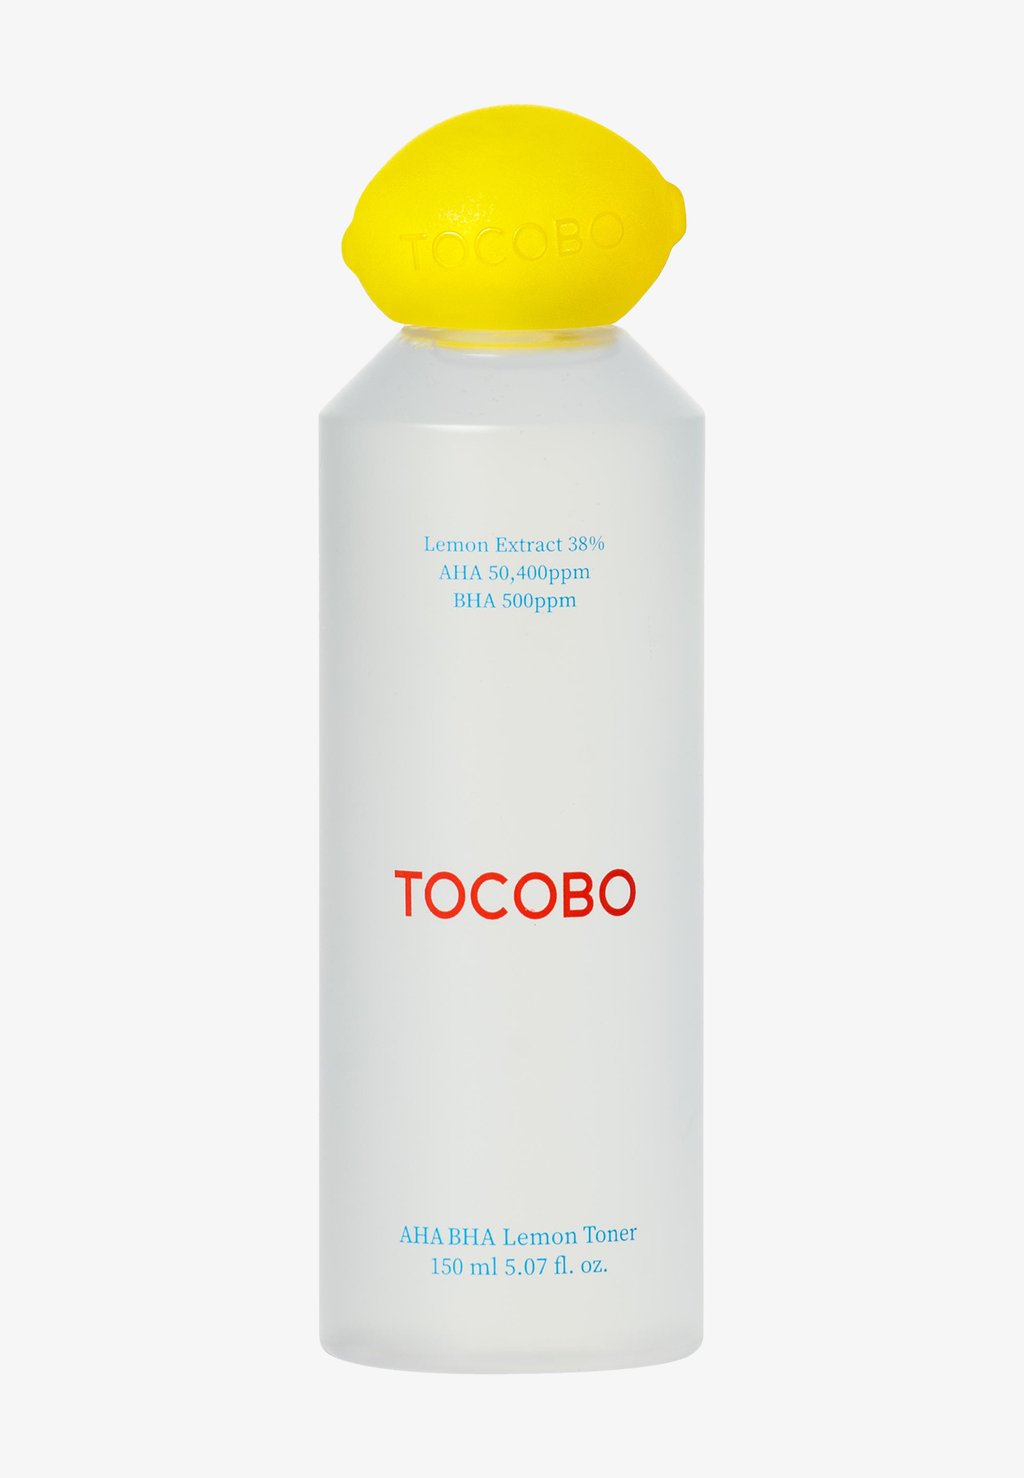 Очищающее средство Aha Bha Lemon Toner tocobo очищающее средство aha bha lemon toner tocobo